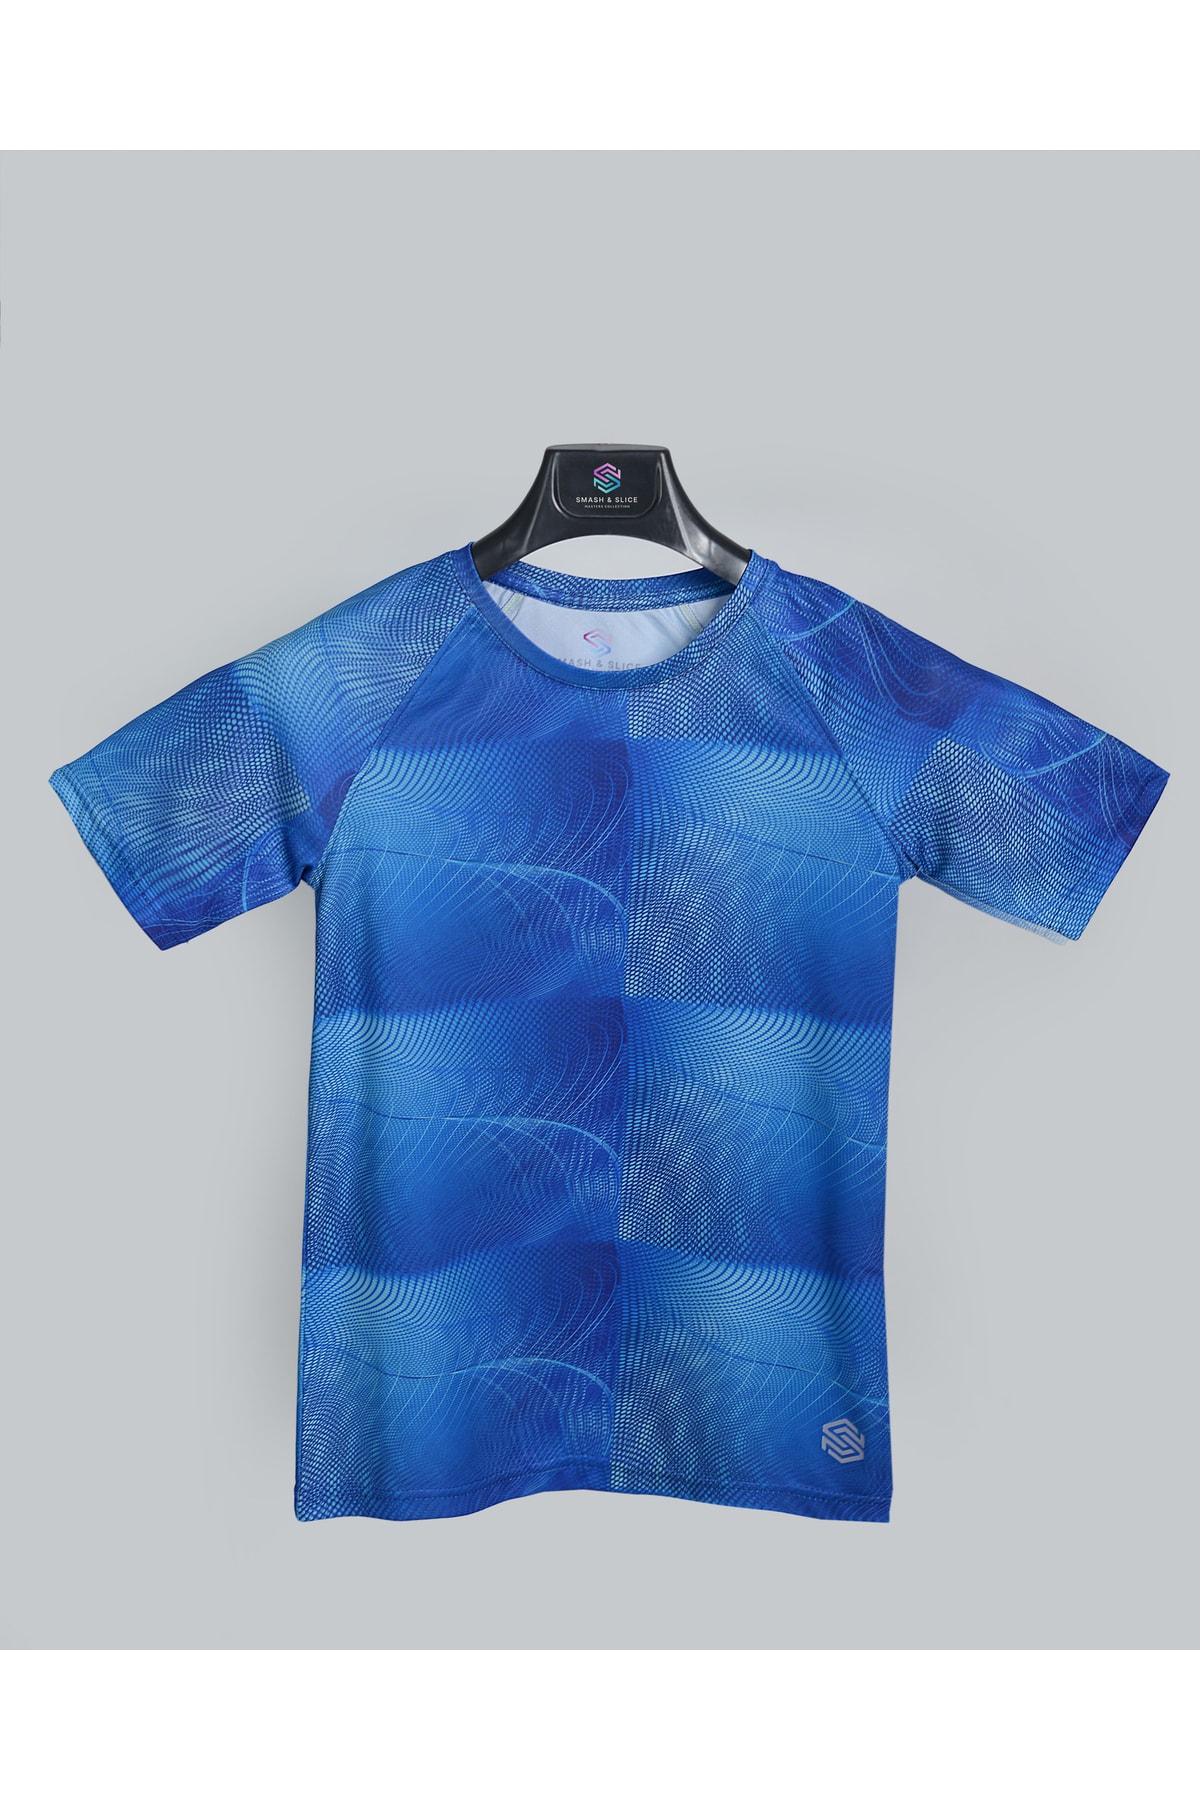 Smash & Slice Erkek Çocuk Antrenman Spor Tshirt Full Desenli Lacivert Geometrik Baskılı